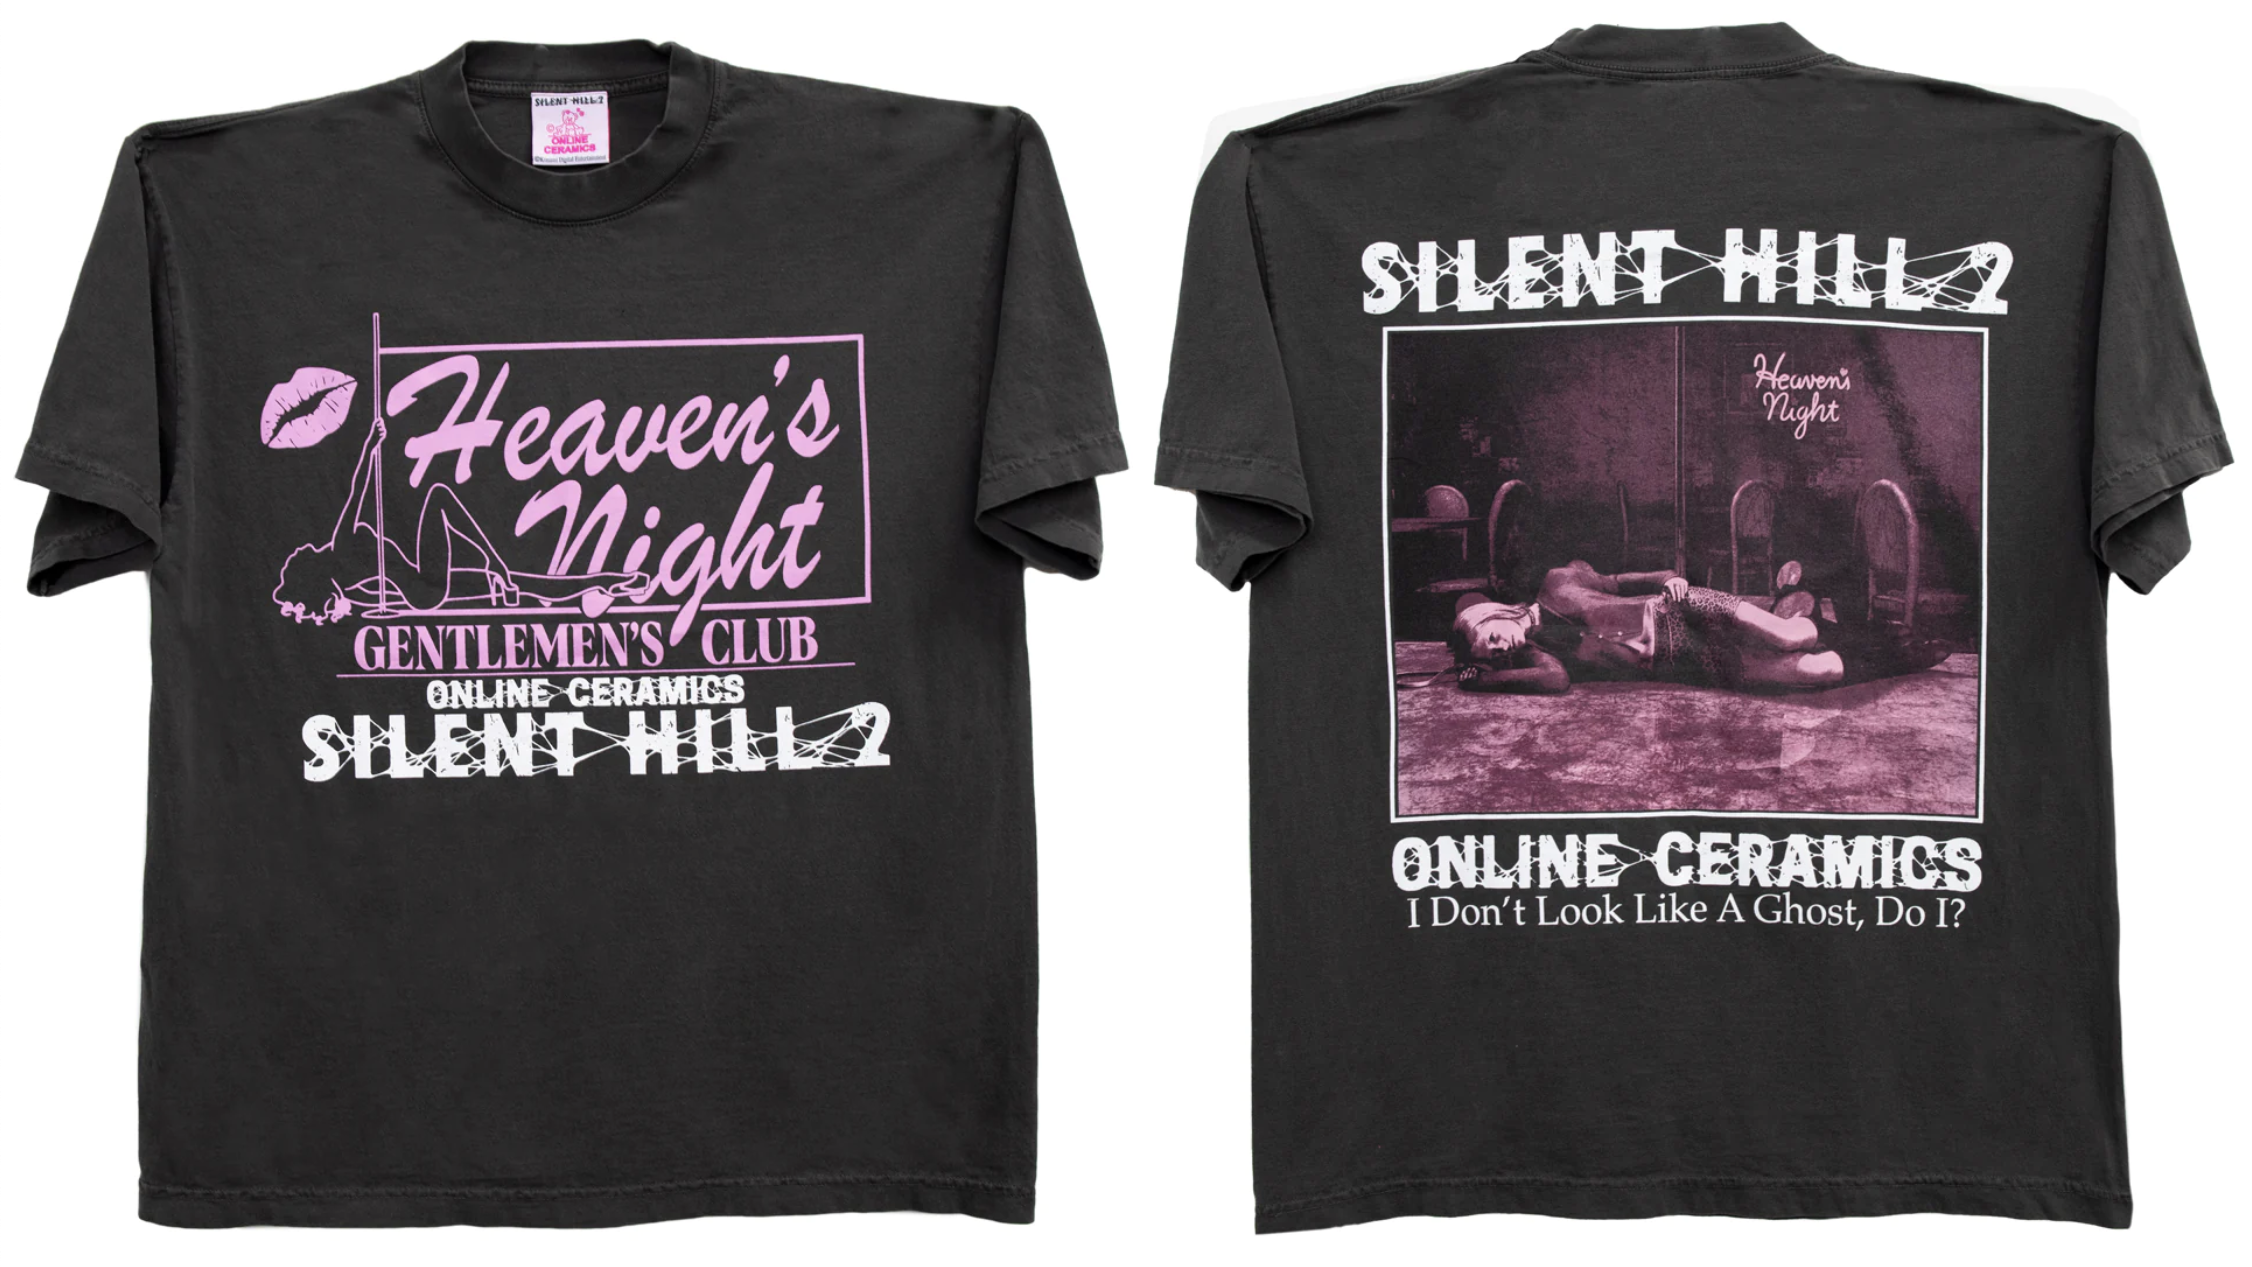 Un t-shirt avec d'un côté le logo du Heaven's Night Gentlemen's Club et de l'autre une photo d'une femme effondrée sur le sol, au-dessus de la citation "Je ne ressemble pas à un fantôme, n'est-ce pas ?"